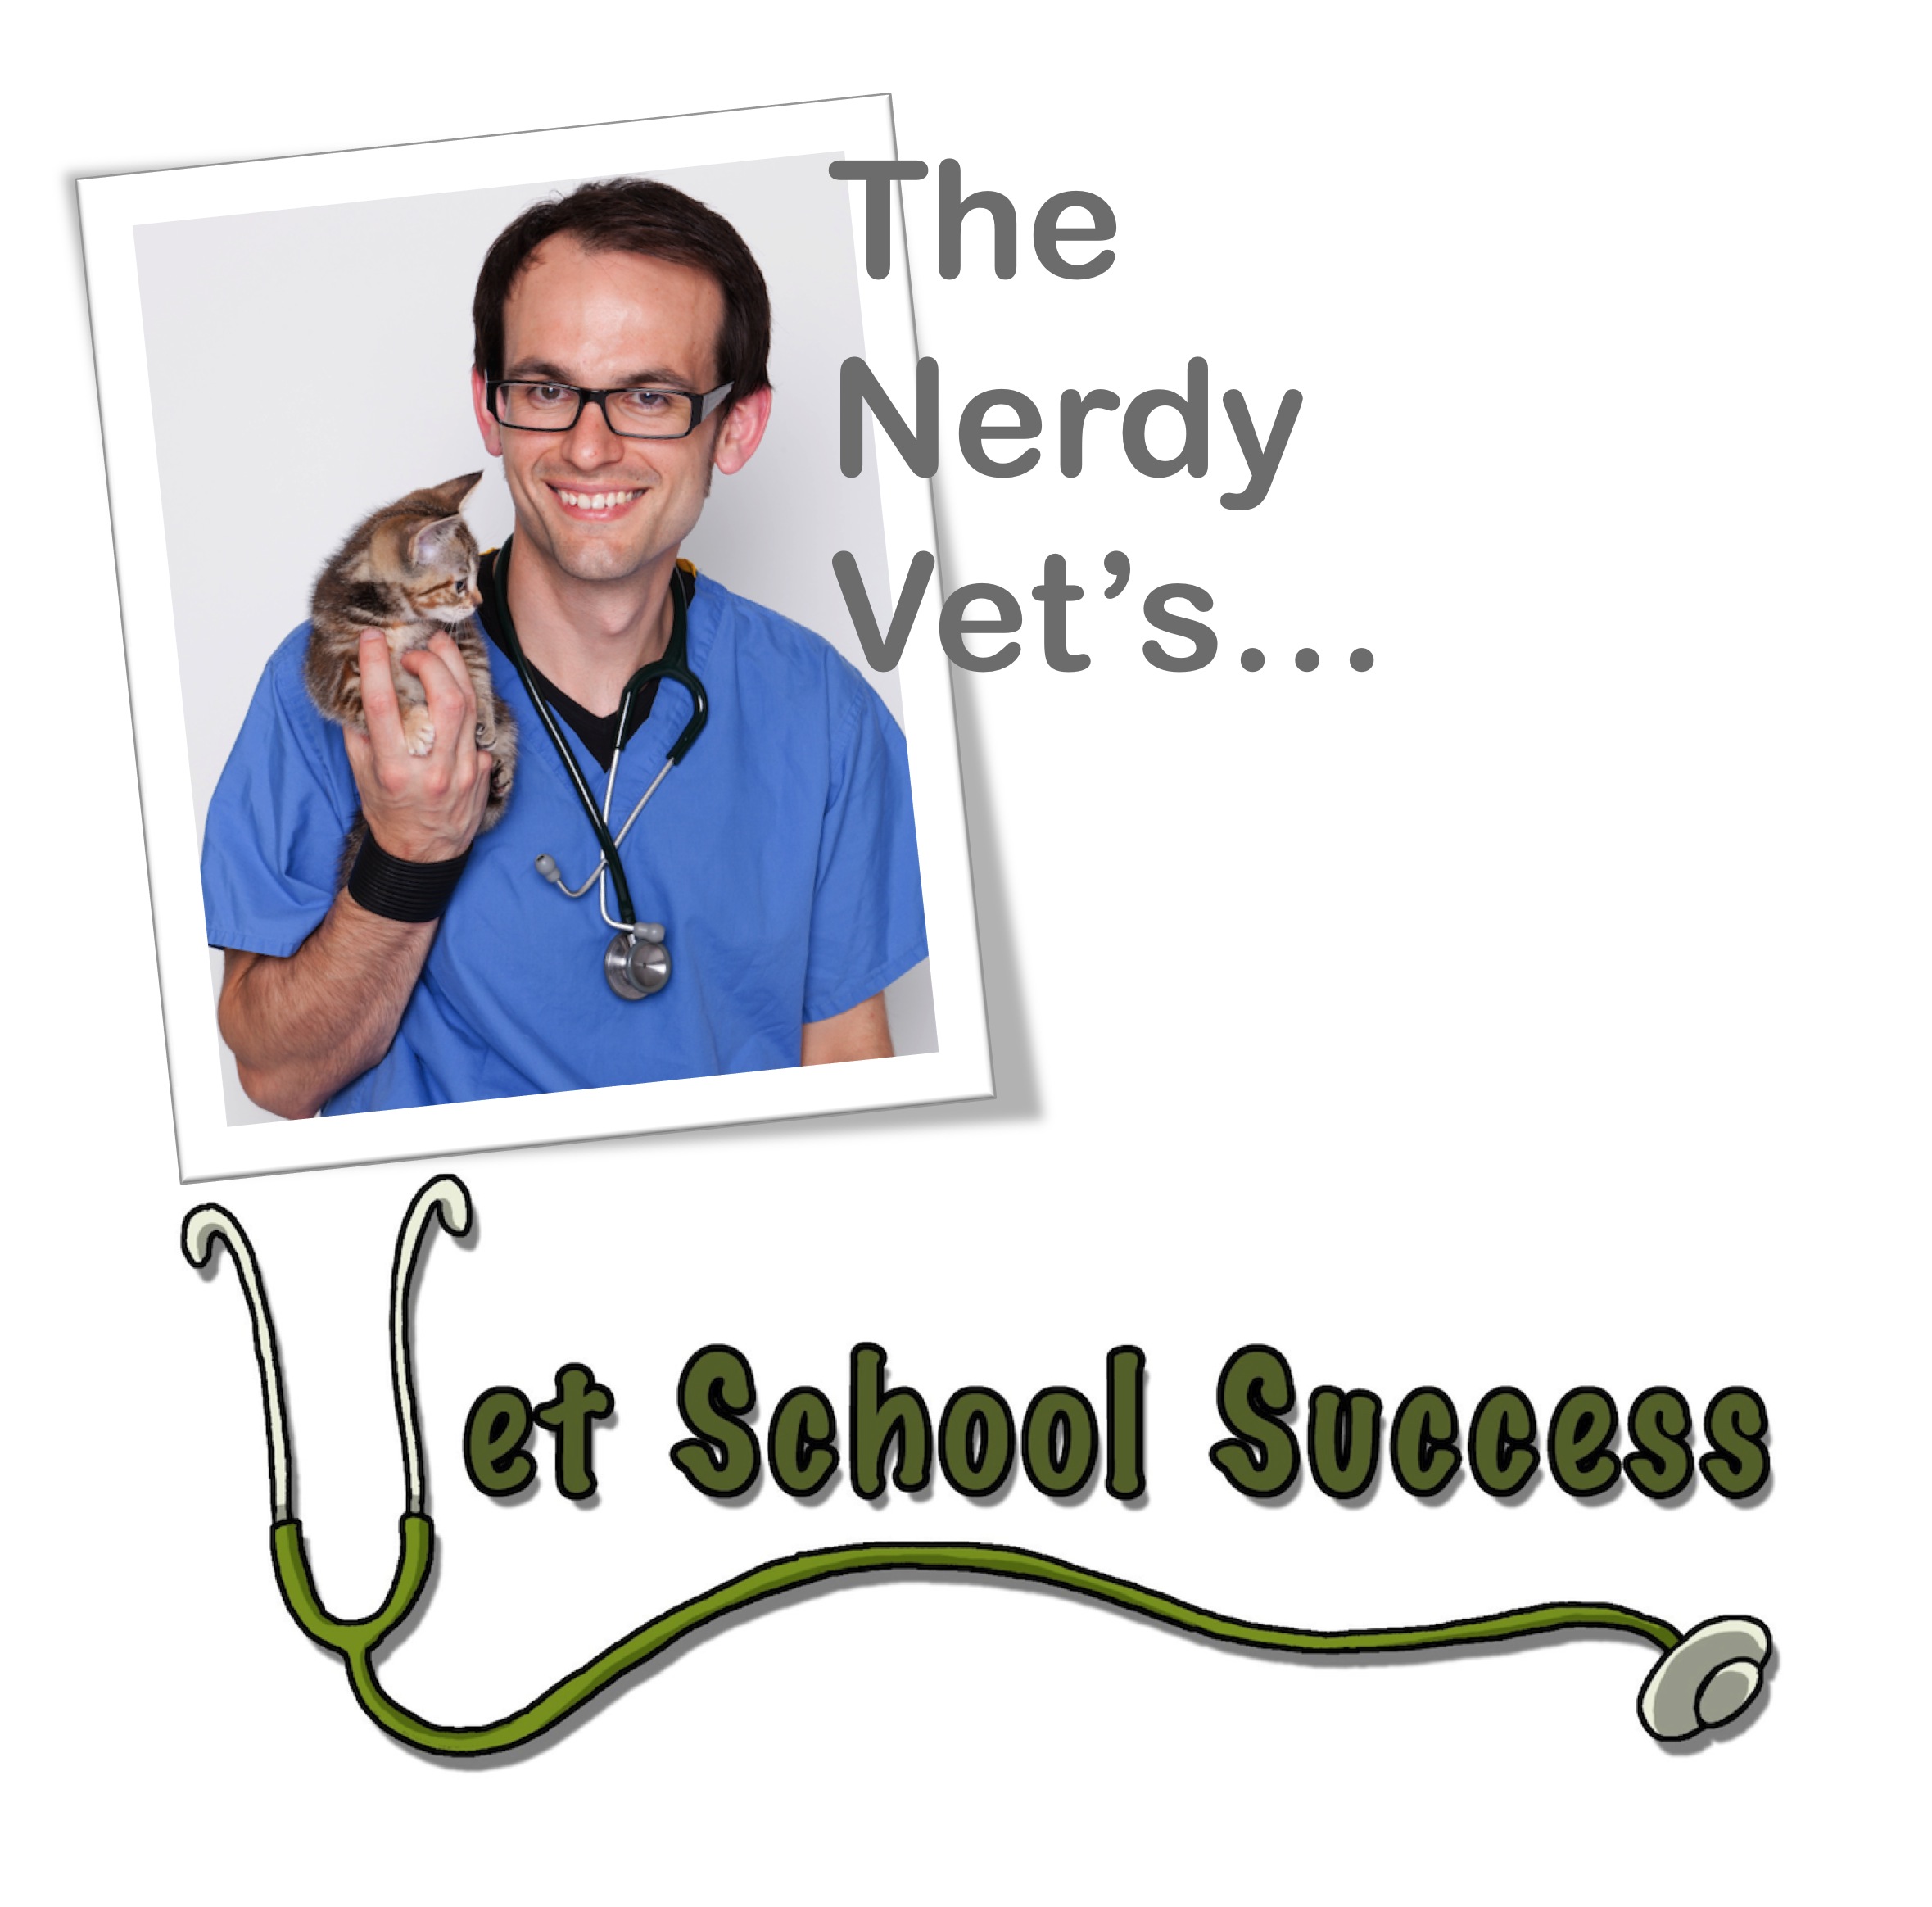 Nerdy Vet, Vet School Success logo